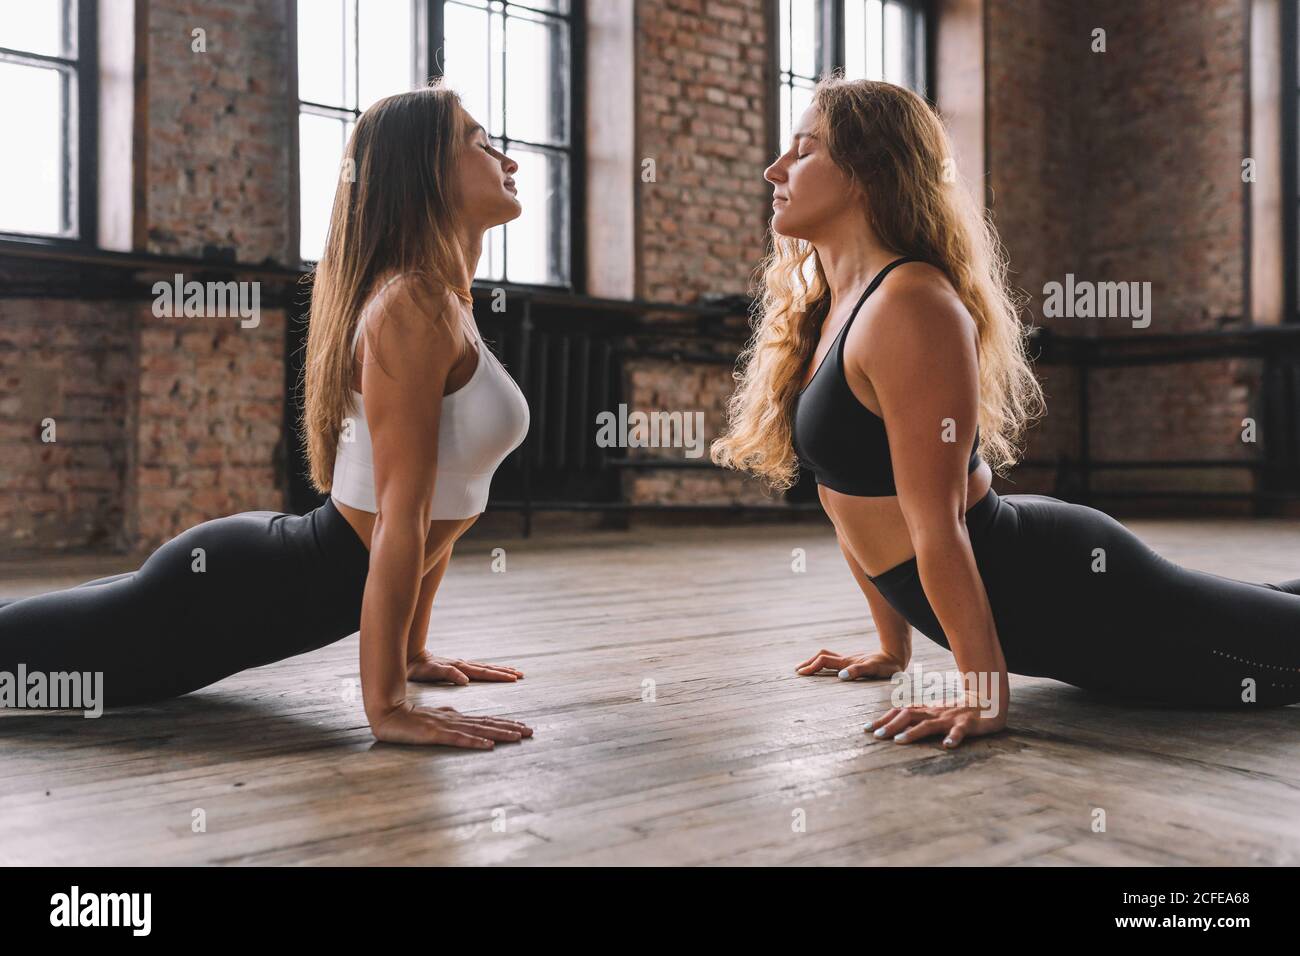 Zwei junge Frauen machen komplexe Dehnung Yoga Asanas in Loft-Stil Klasse von Angesicht zu Angesicht. Urdhva Mukha Svanasana - Nach Oben Gerichtete Hundehaltung. Stockfoto